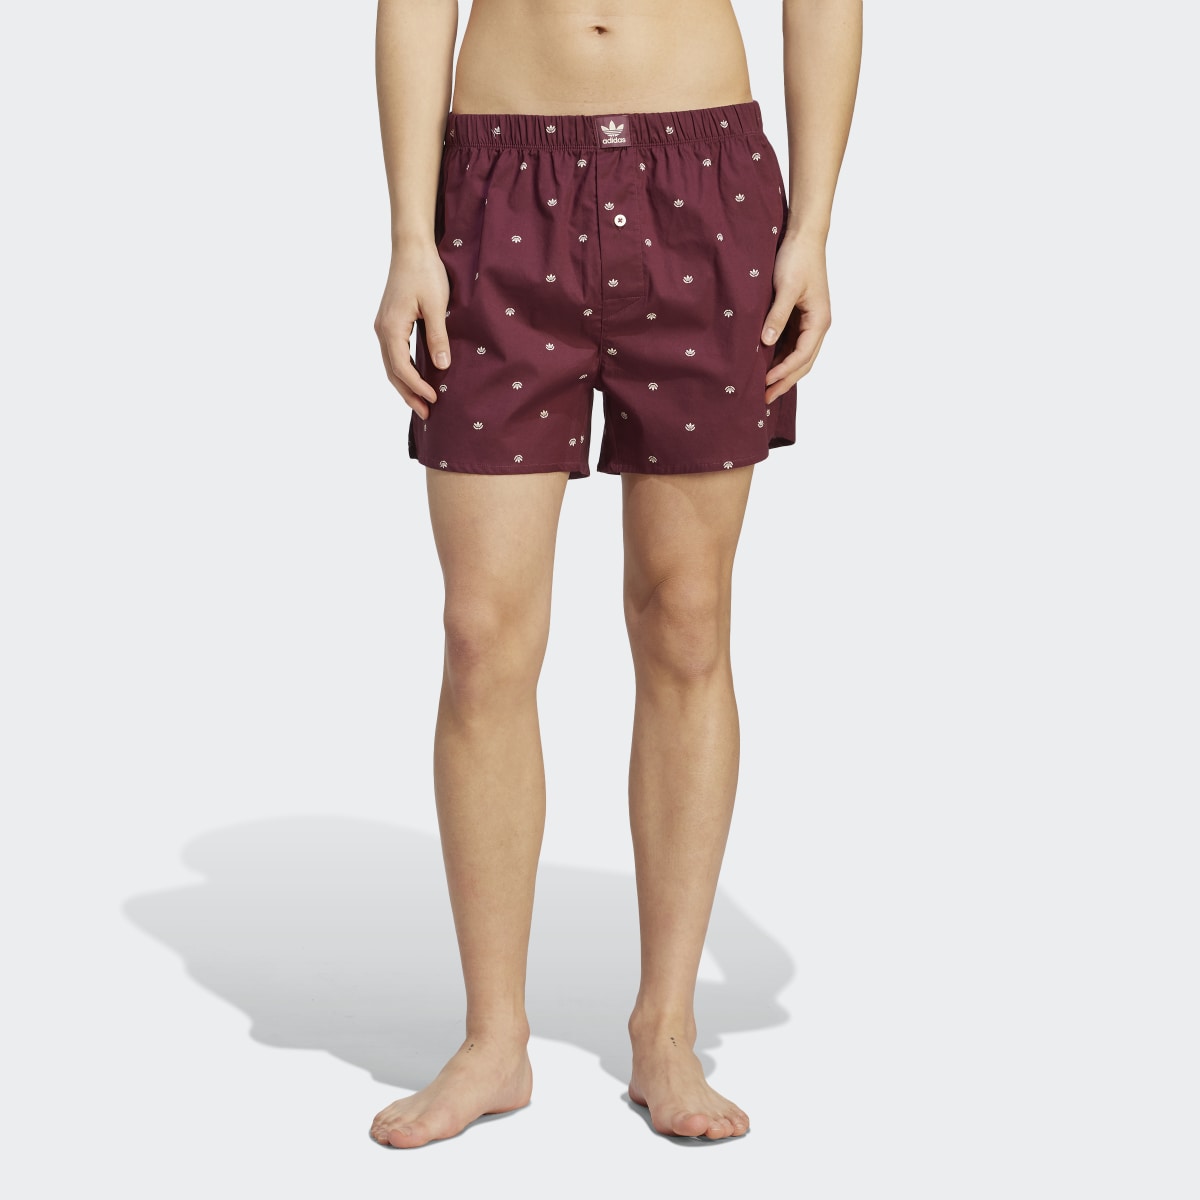 Adidas Boxer Comfort Core Cotton Icon Woven Underwear (Confezione da 2). 4